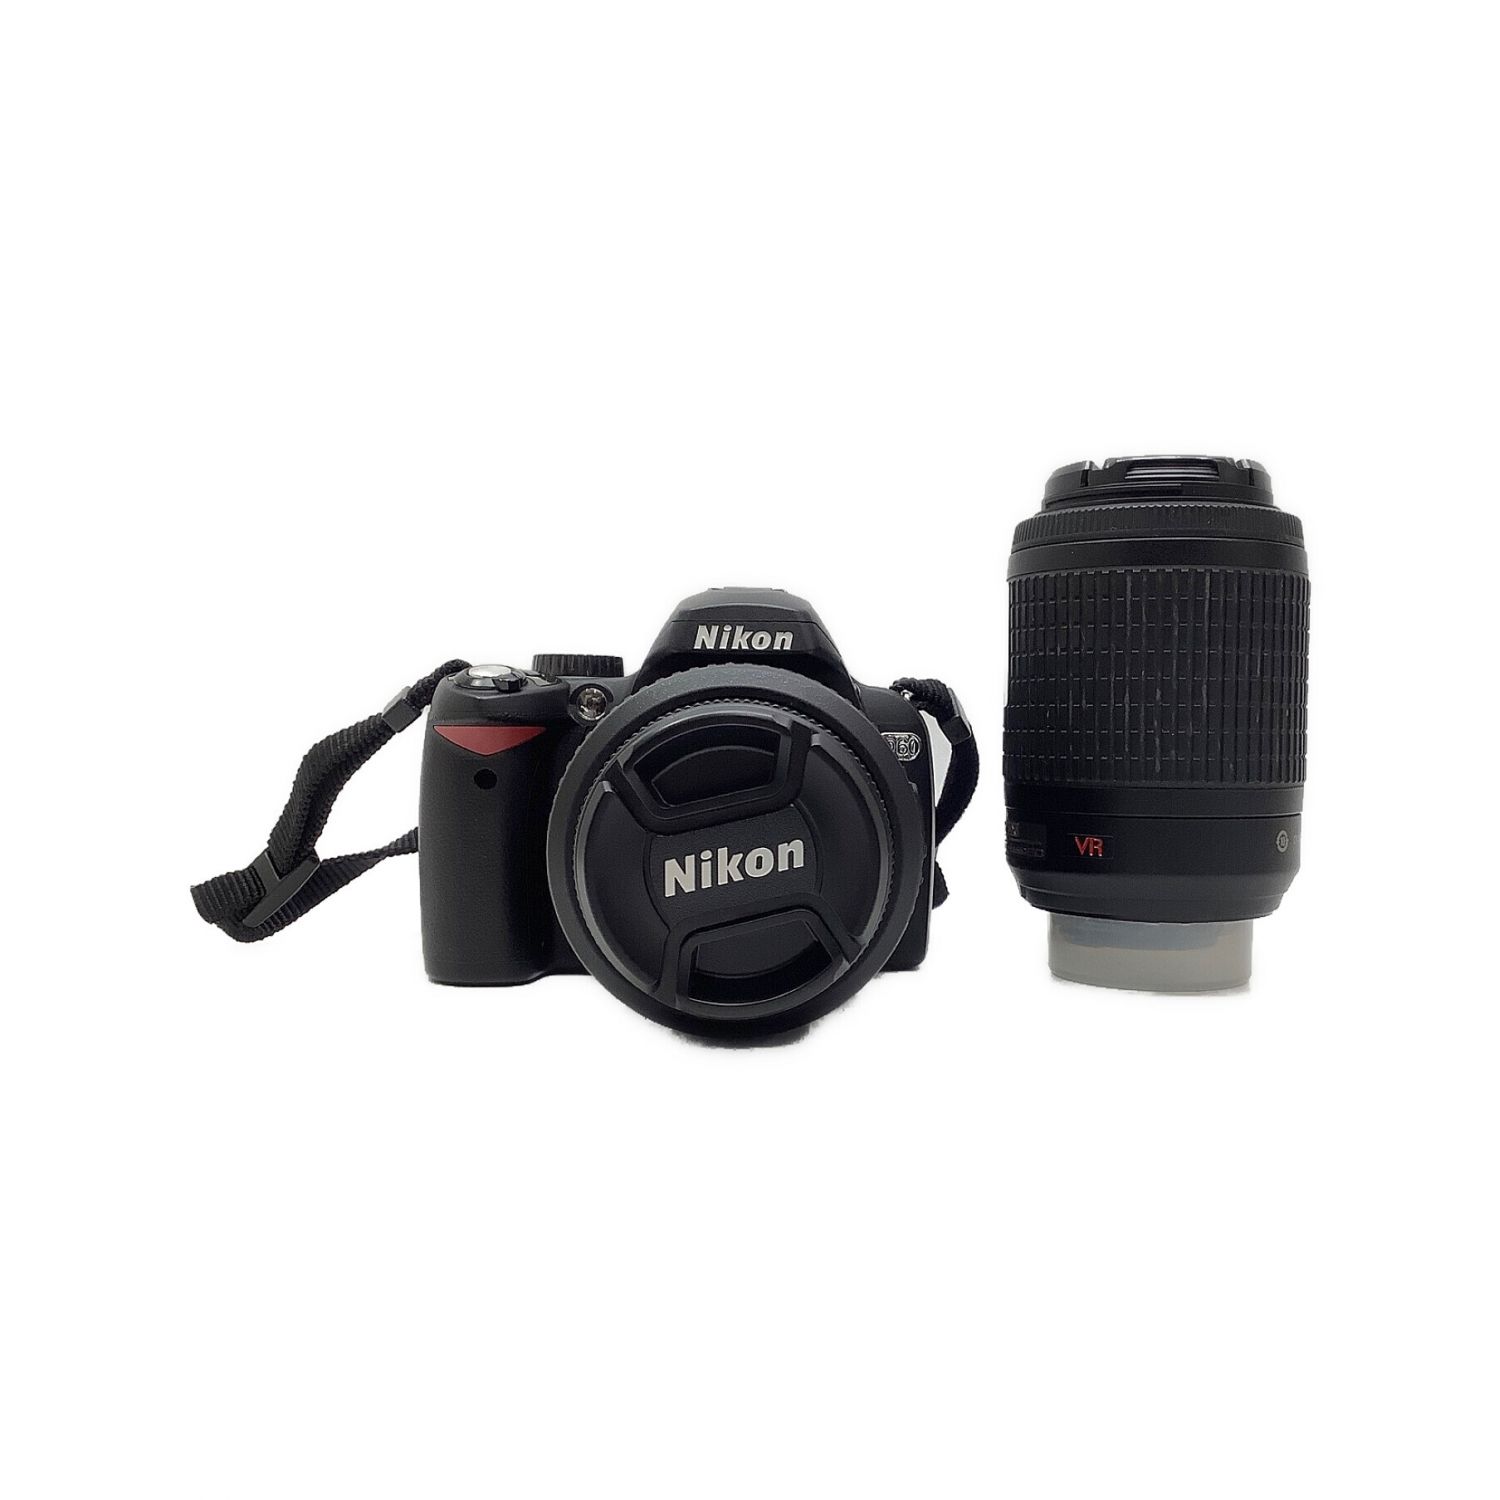 Nikon (ニコン) デジタル一眼レフカメラ D60 ダブルズームレンズキット